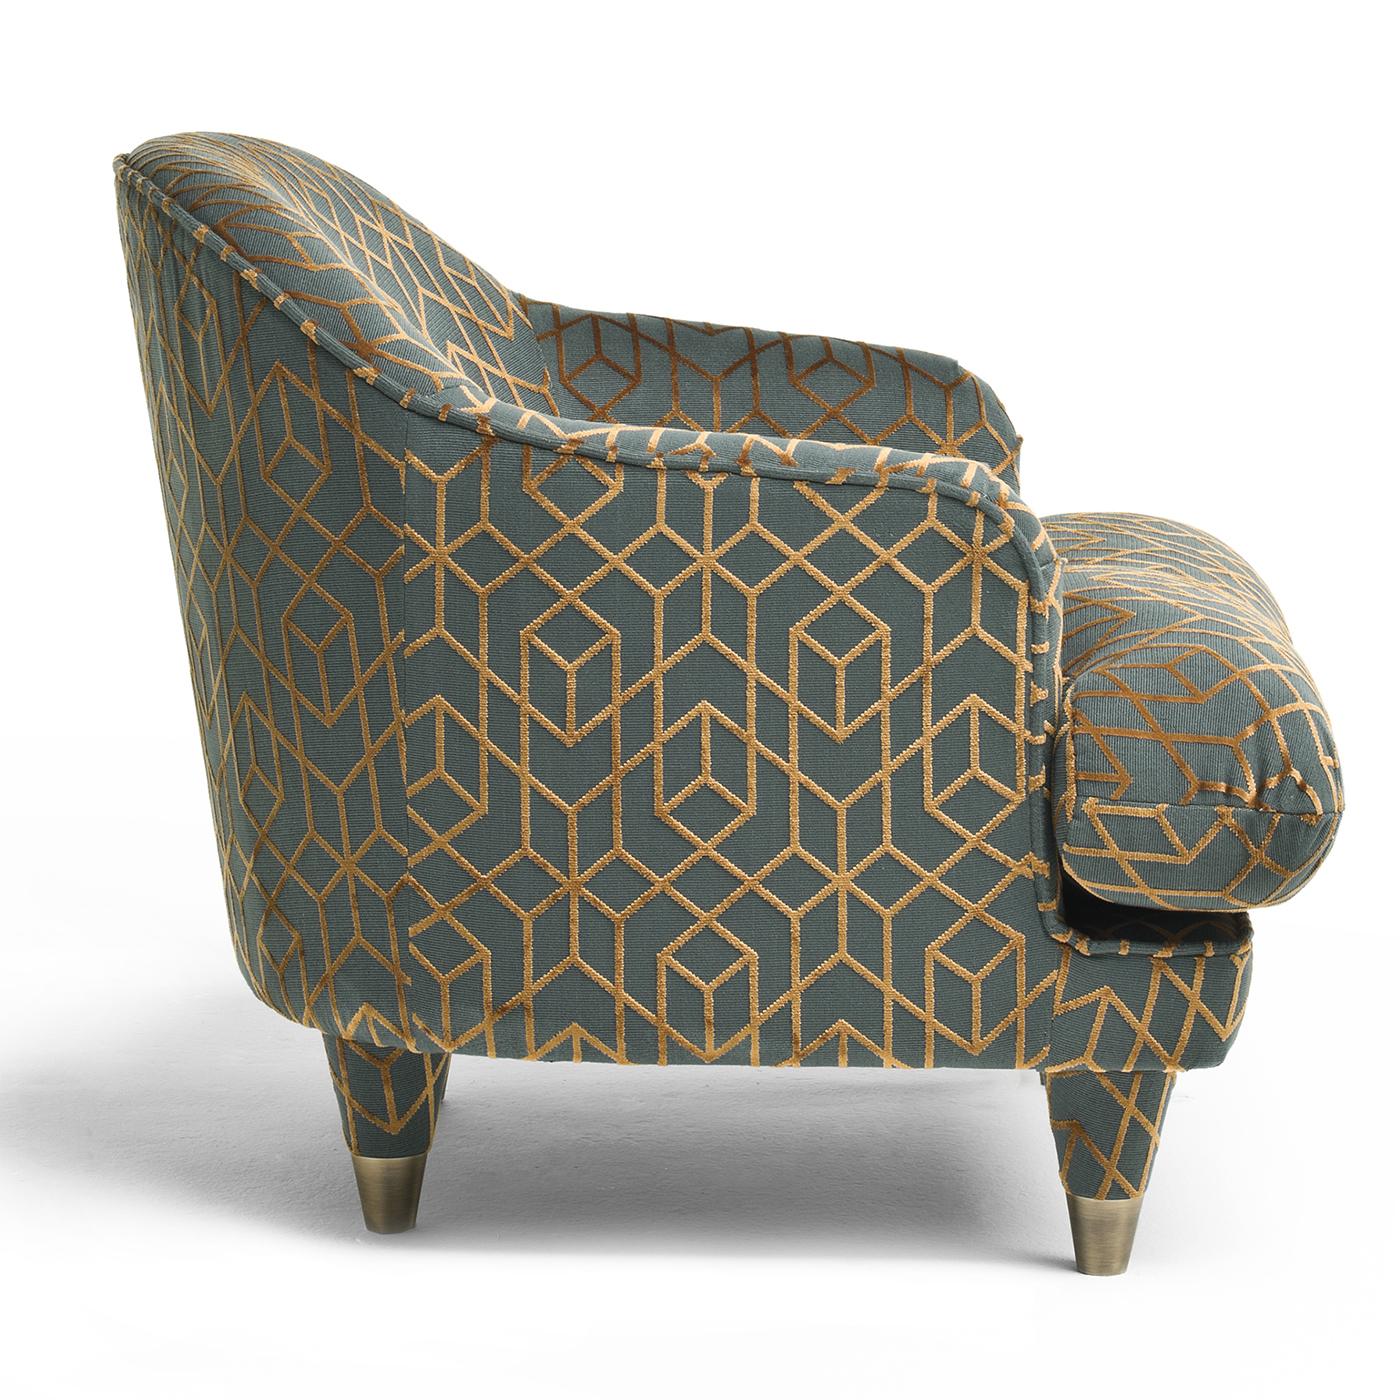 Une version contemporaine chic d'un véritable classique, le fauteuil Century Club est conçu pour un confort pur. Dans une tapisserie vert moody avec un imprimé géométrique cuivré, la chaise se caractérise par un grand coussin d'assise, vous invitant